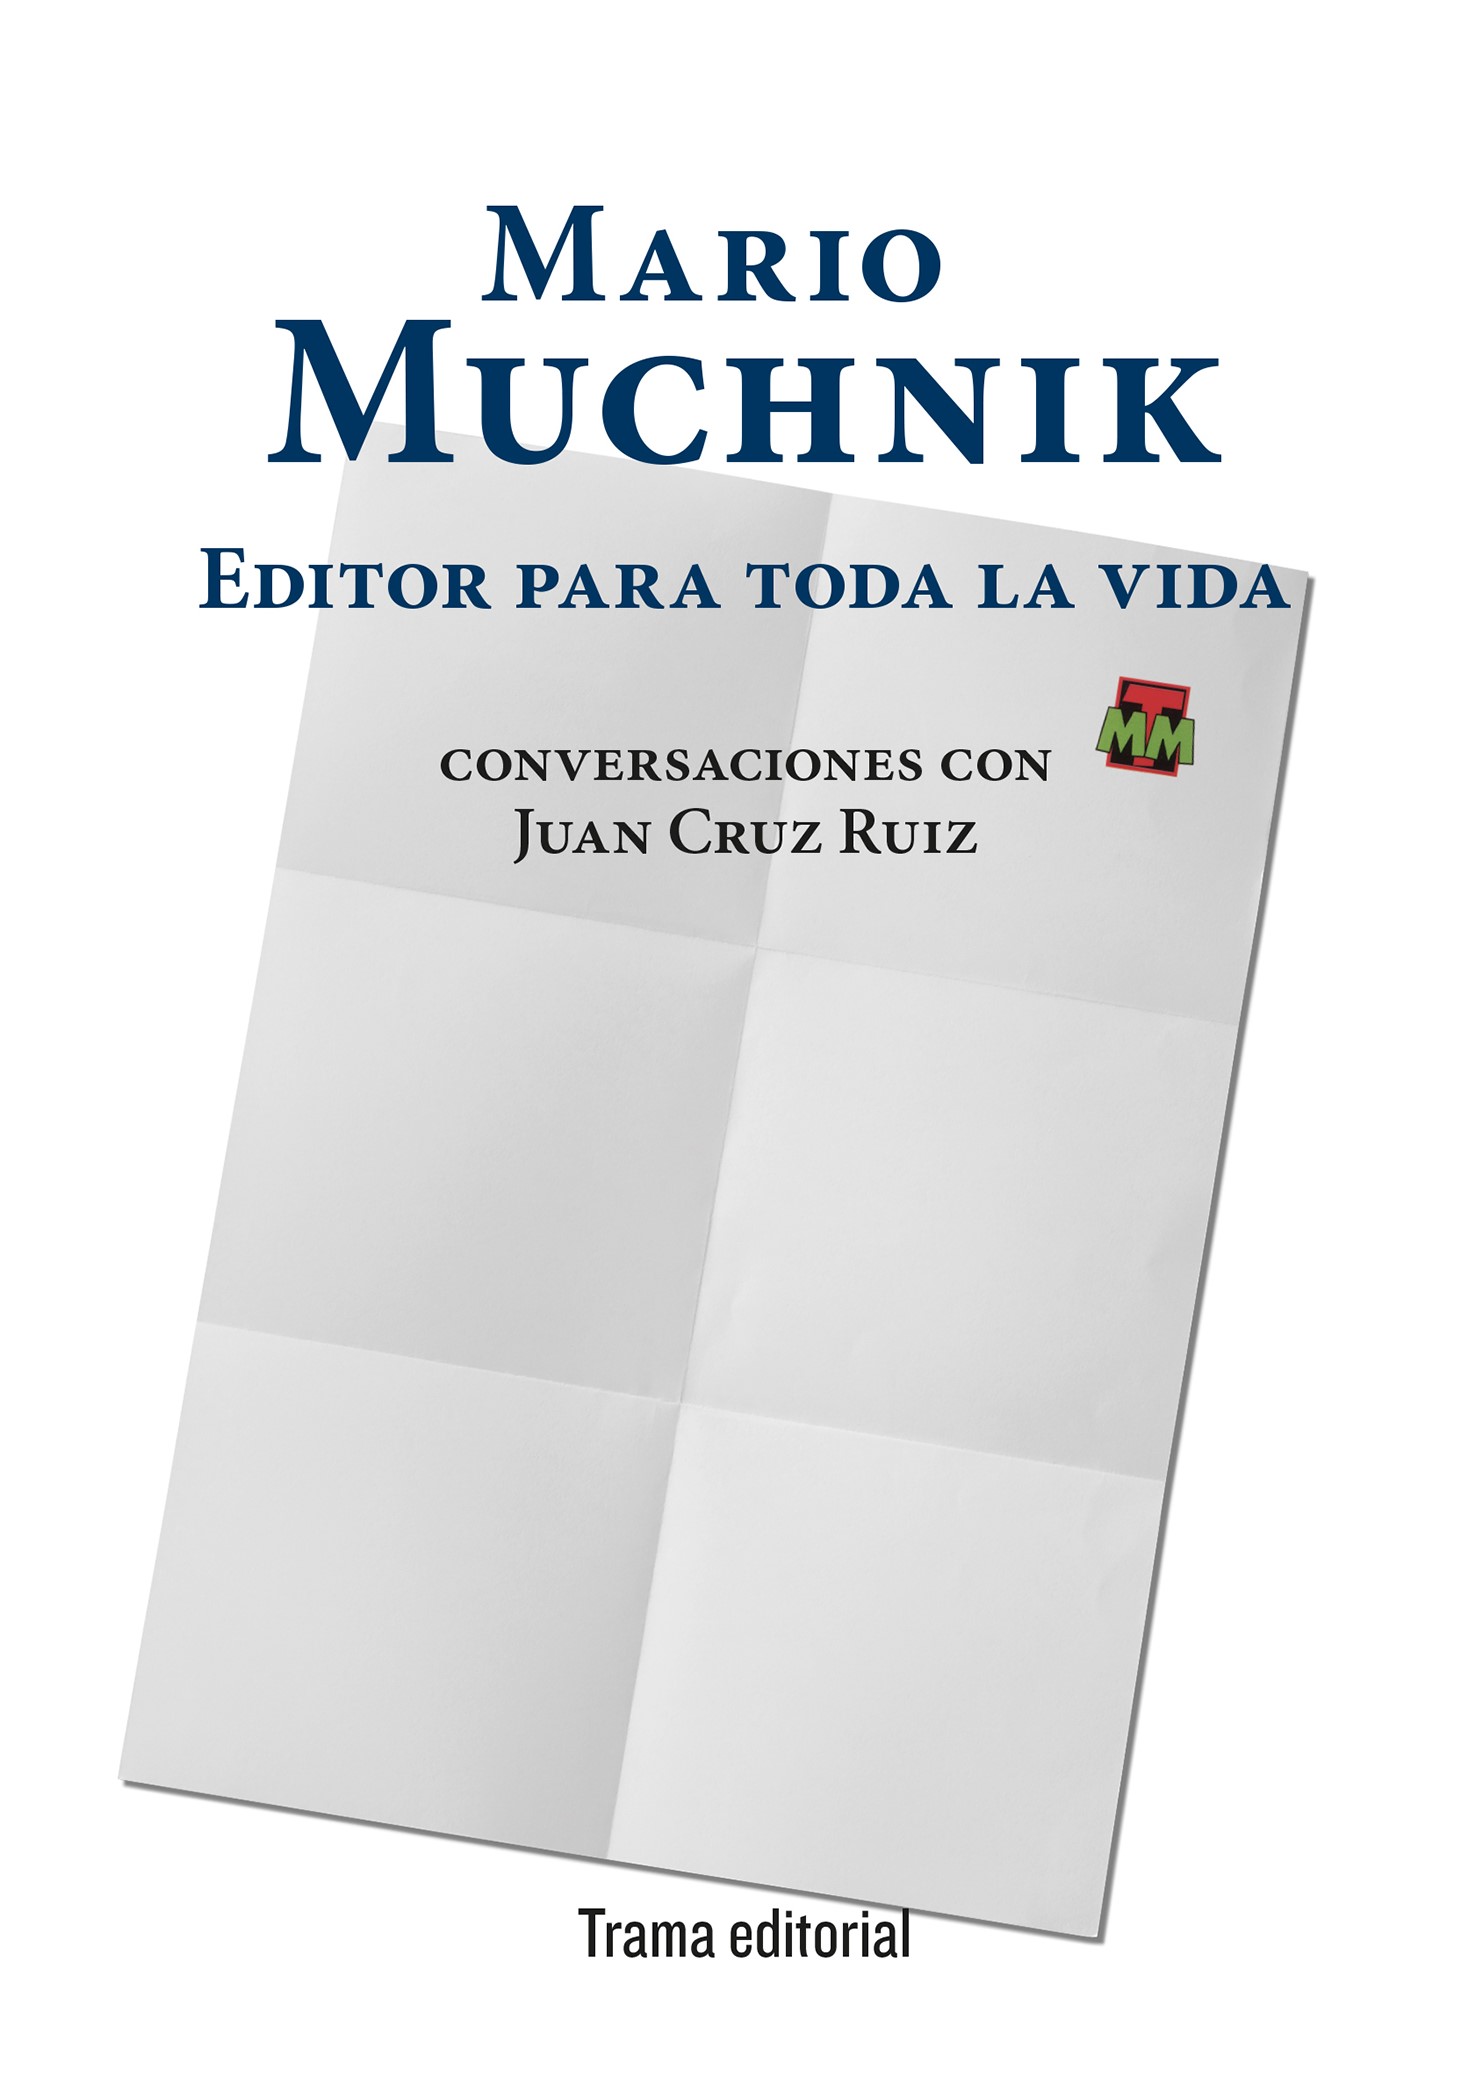 Mario Muchnik: editor para toda la vida